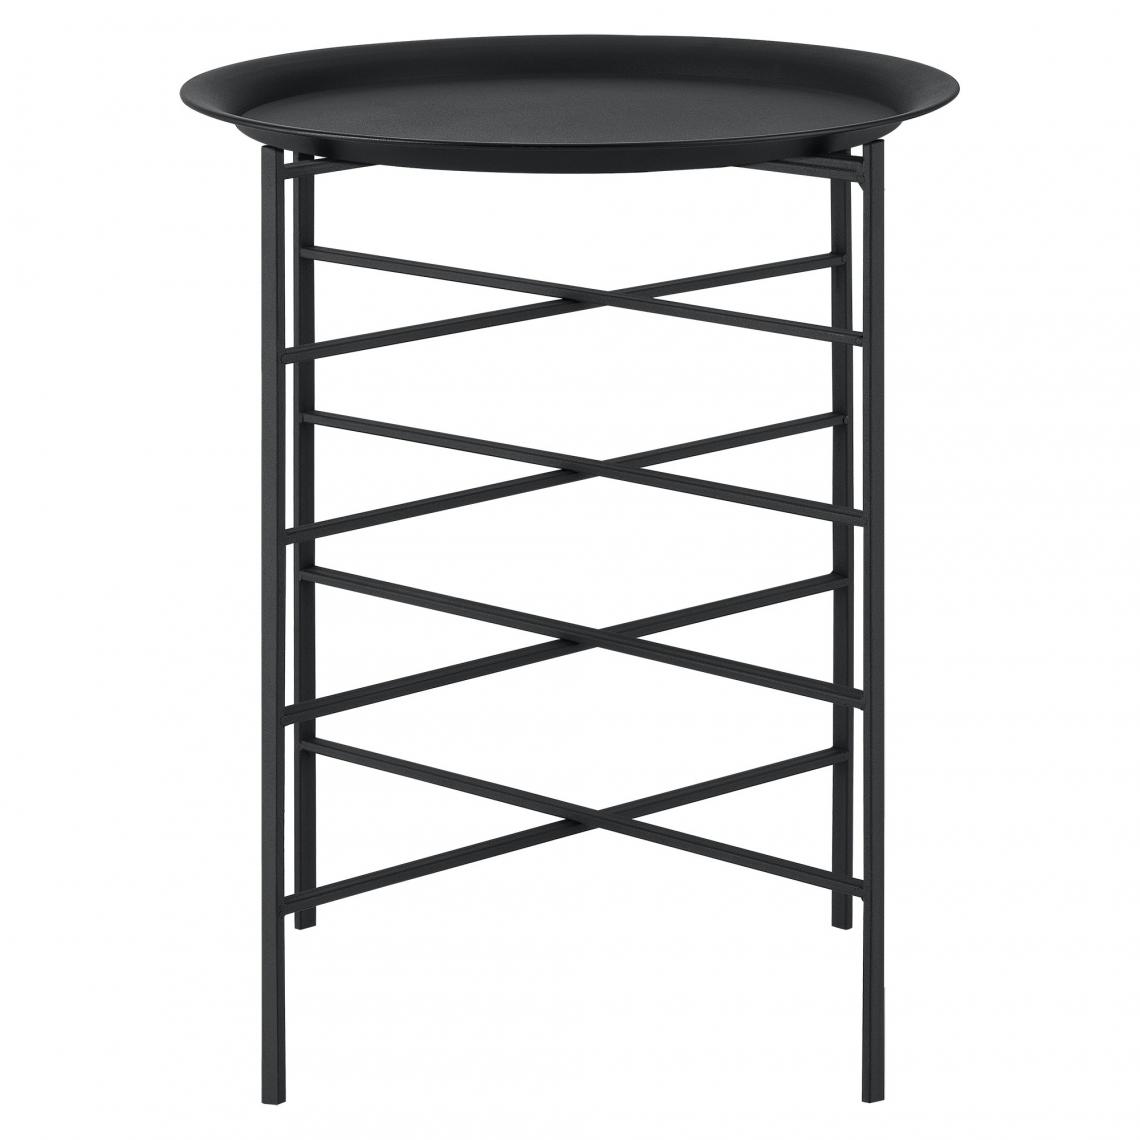 Helloshop26 - Table basse design plateau amovible rangement meuble de salon métal 52 cm noir 03_0006158 - Tables basses